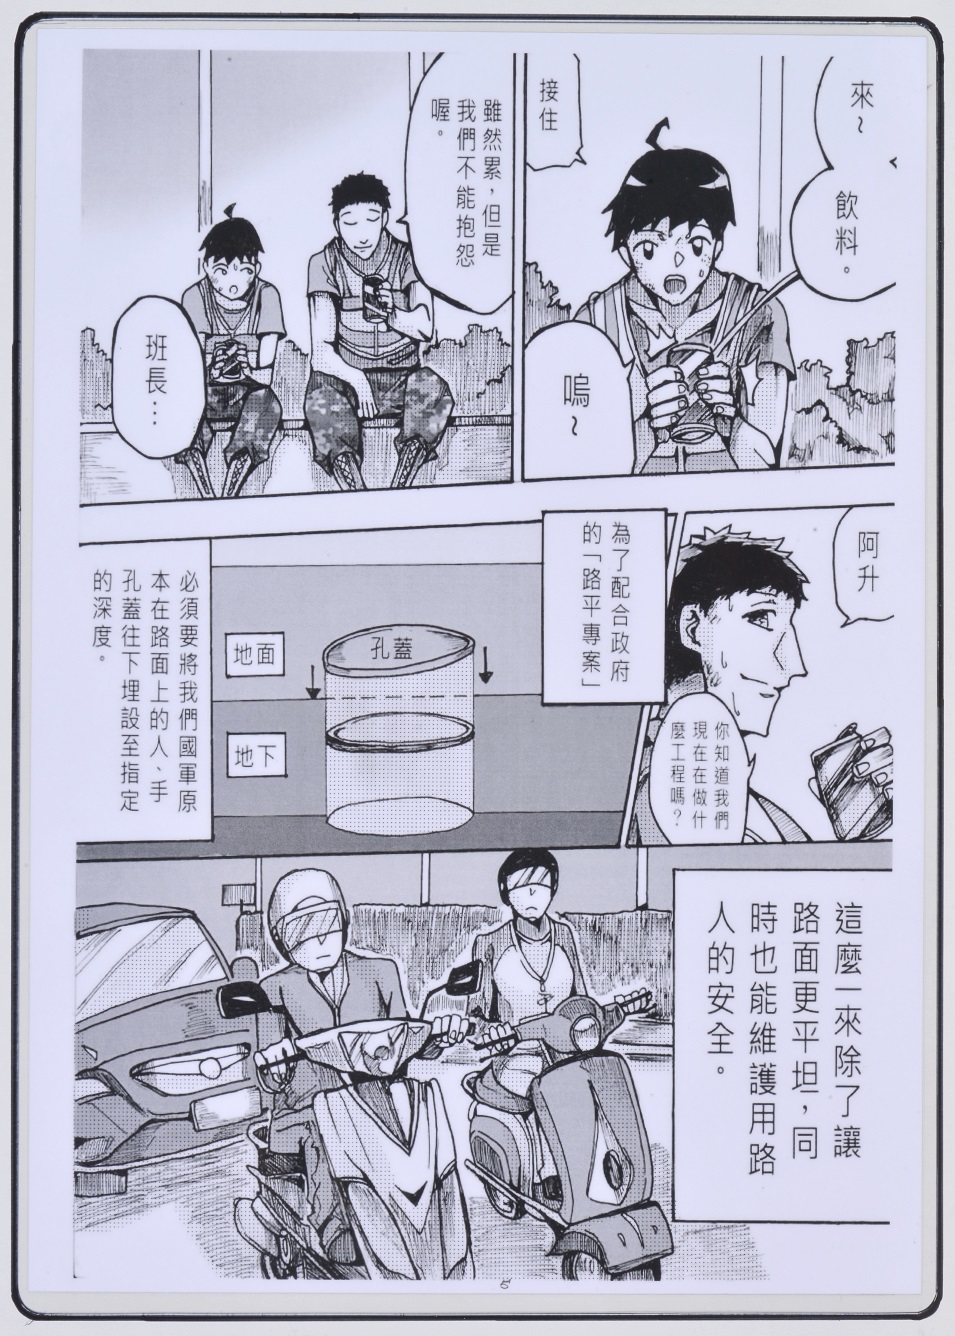 漫畫-國軍-優3-鄭棨升-強而有力的後盾-5.JPG